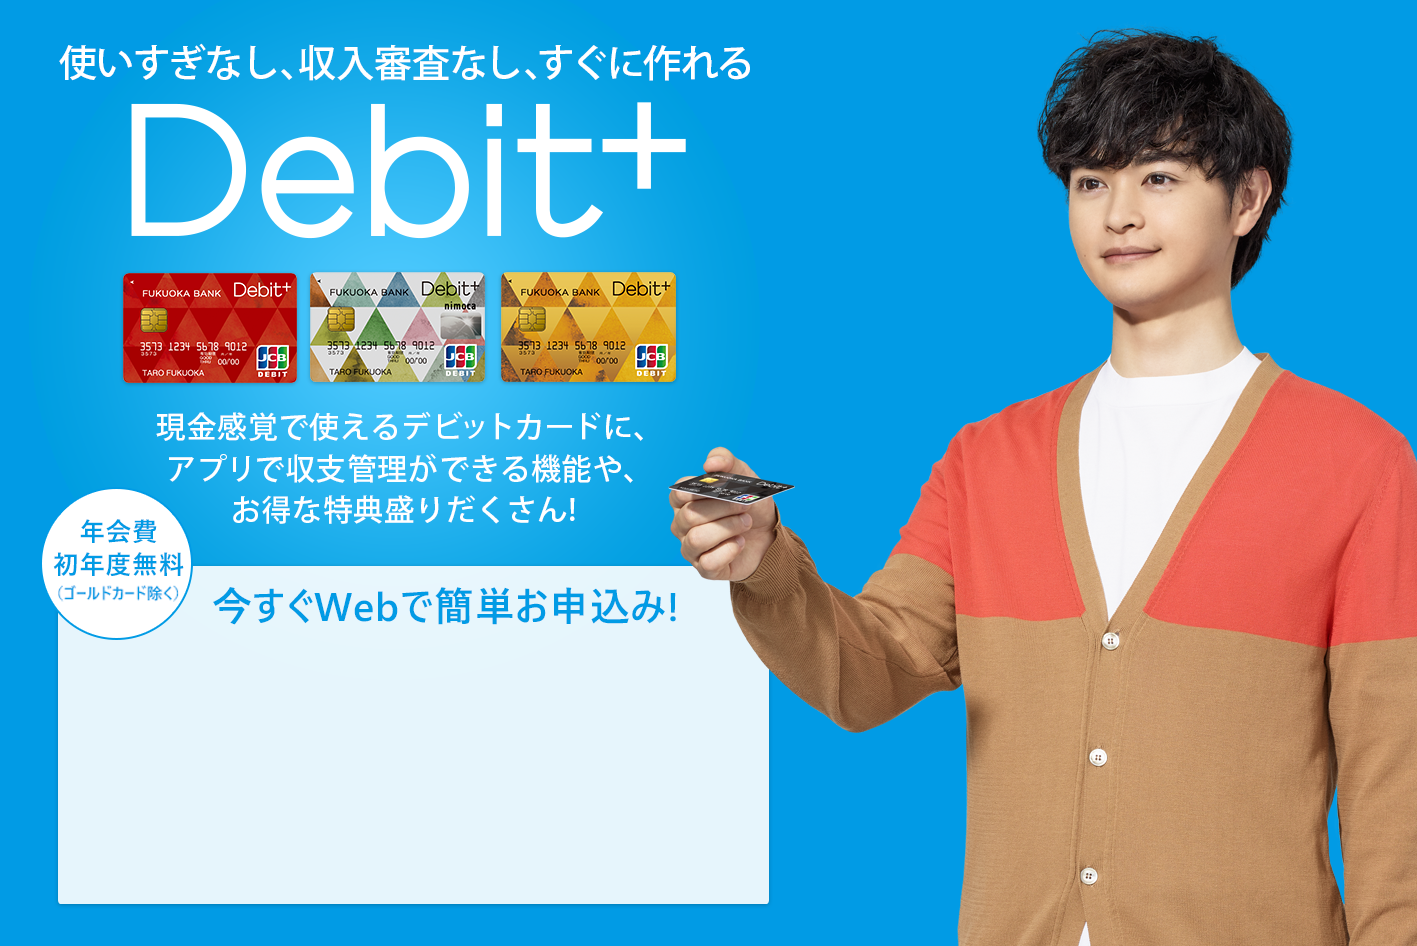 収支まるわかり現金感覚カードDebit+　現金感覚で使えるデビットカードに、福岡銀行ならではの収支まるわかり機能や、お得な特典盛りだくさん！